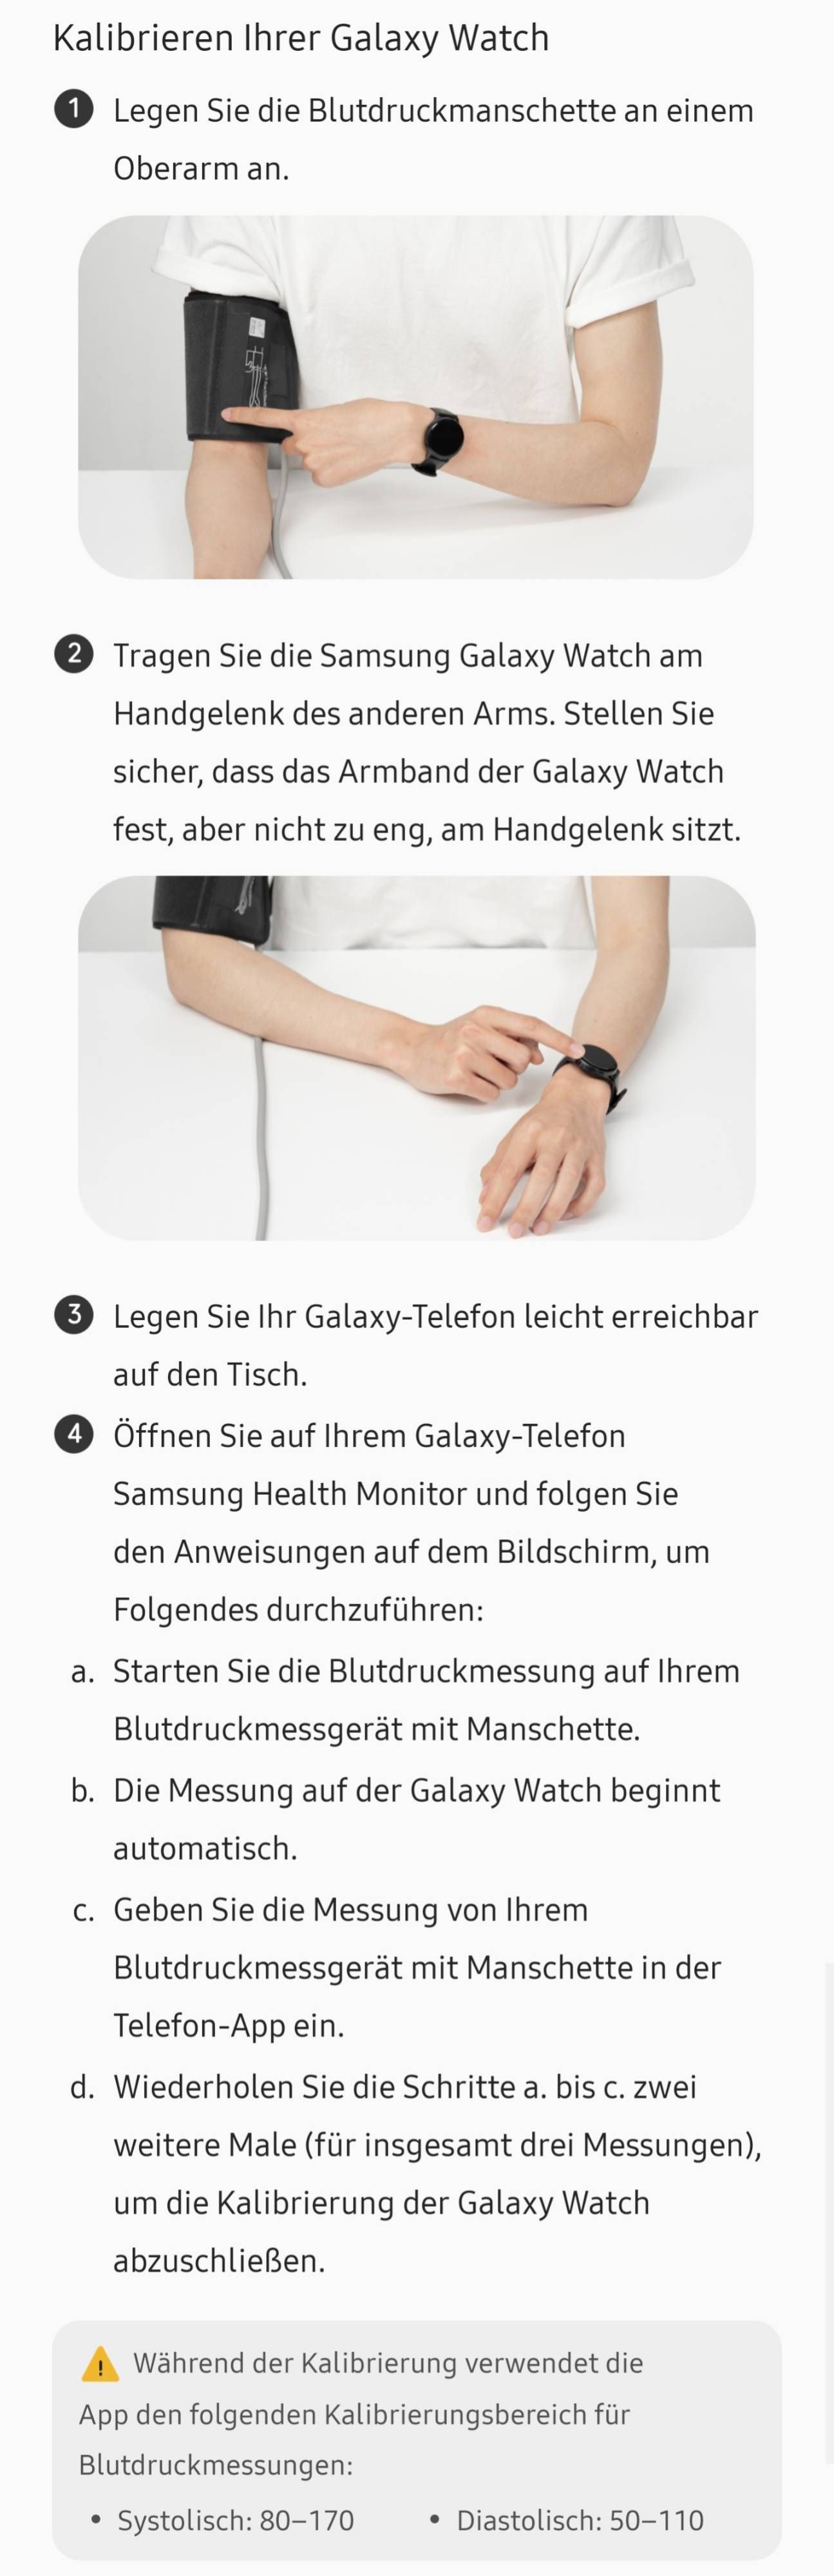 Watch 4 classic Kalibrierung mit Blutdruckgerät? - Samsung Community